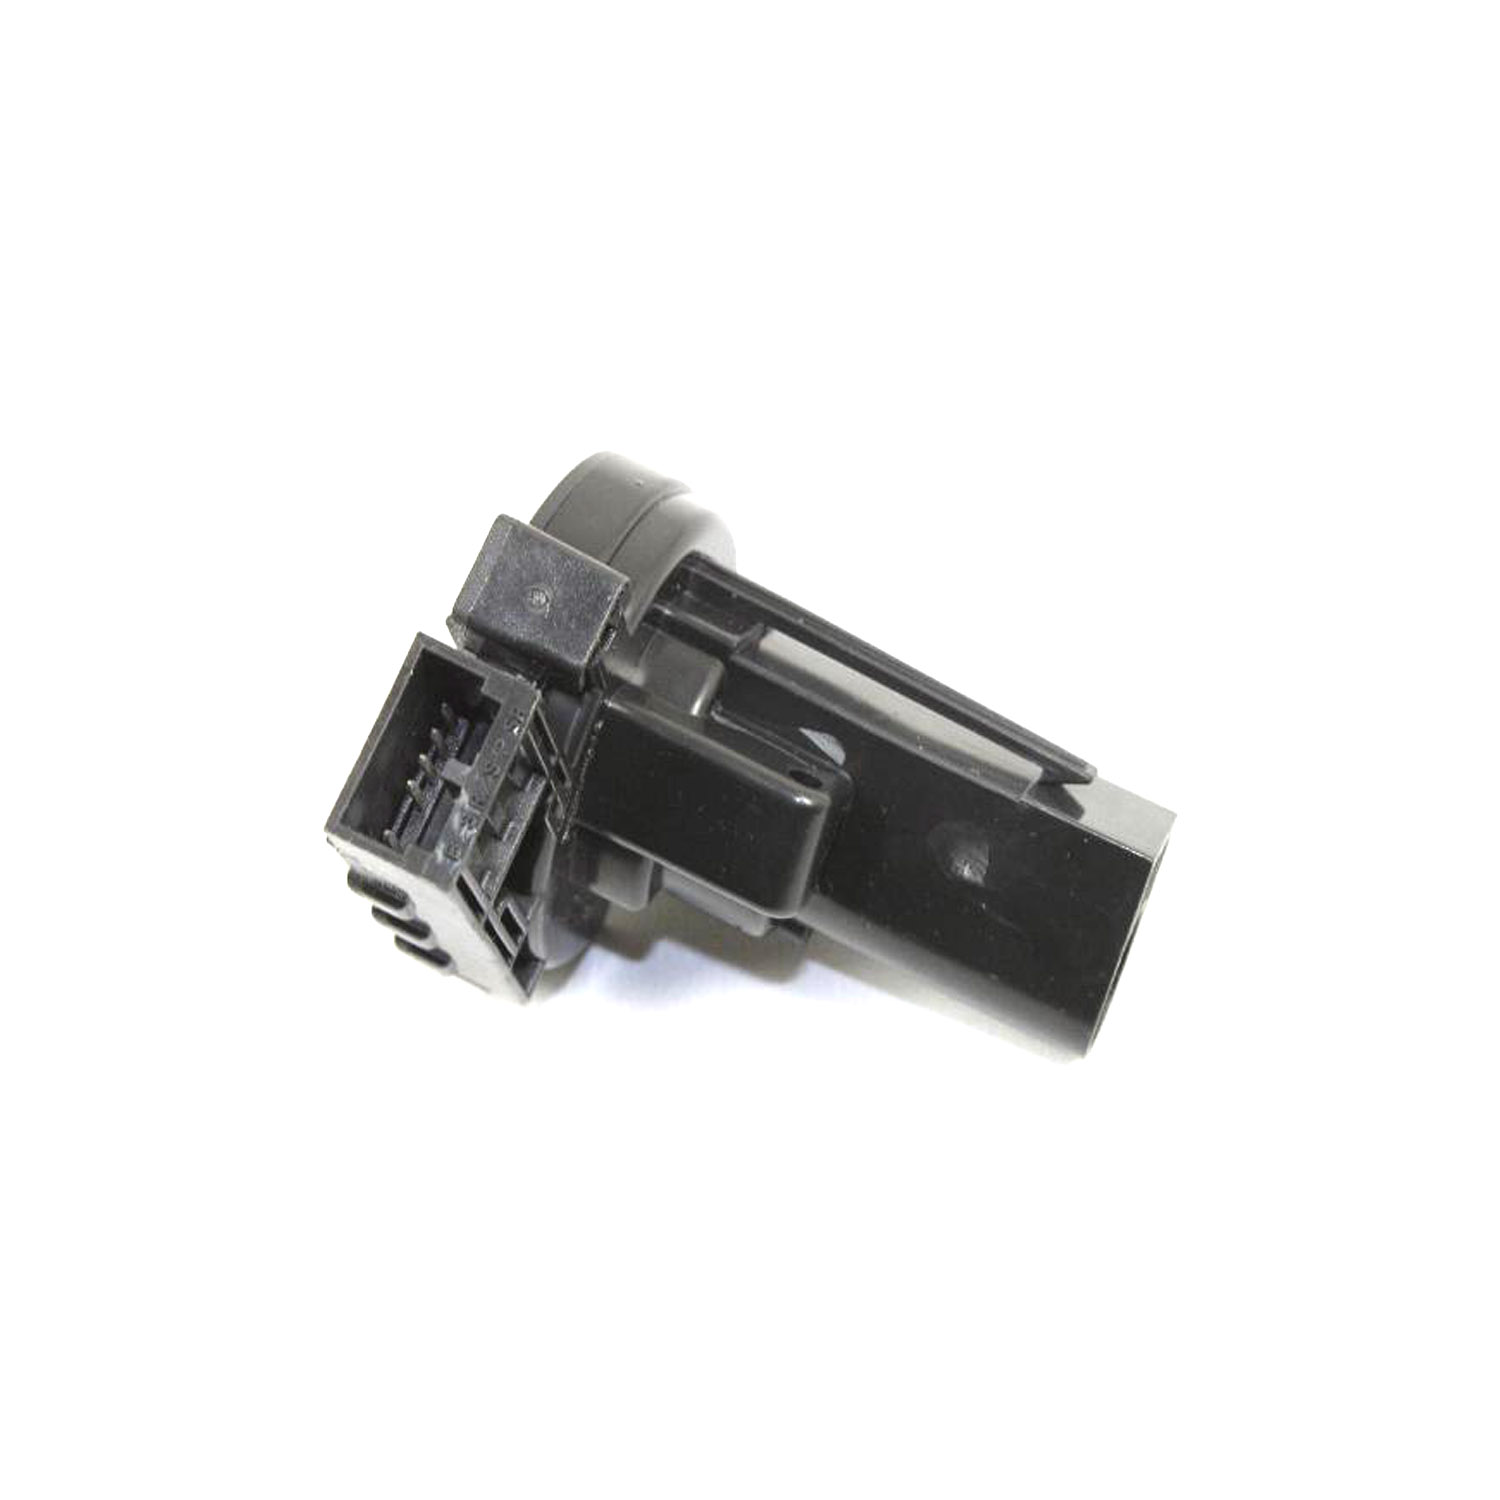 MOPAR PARTS - Ignition Switch Kit - MOP 56049838AC